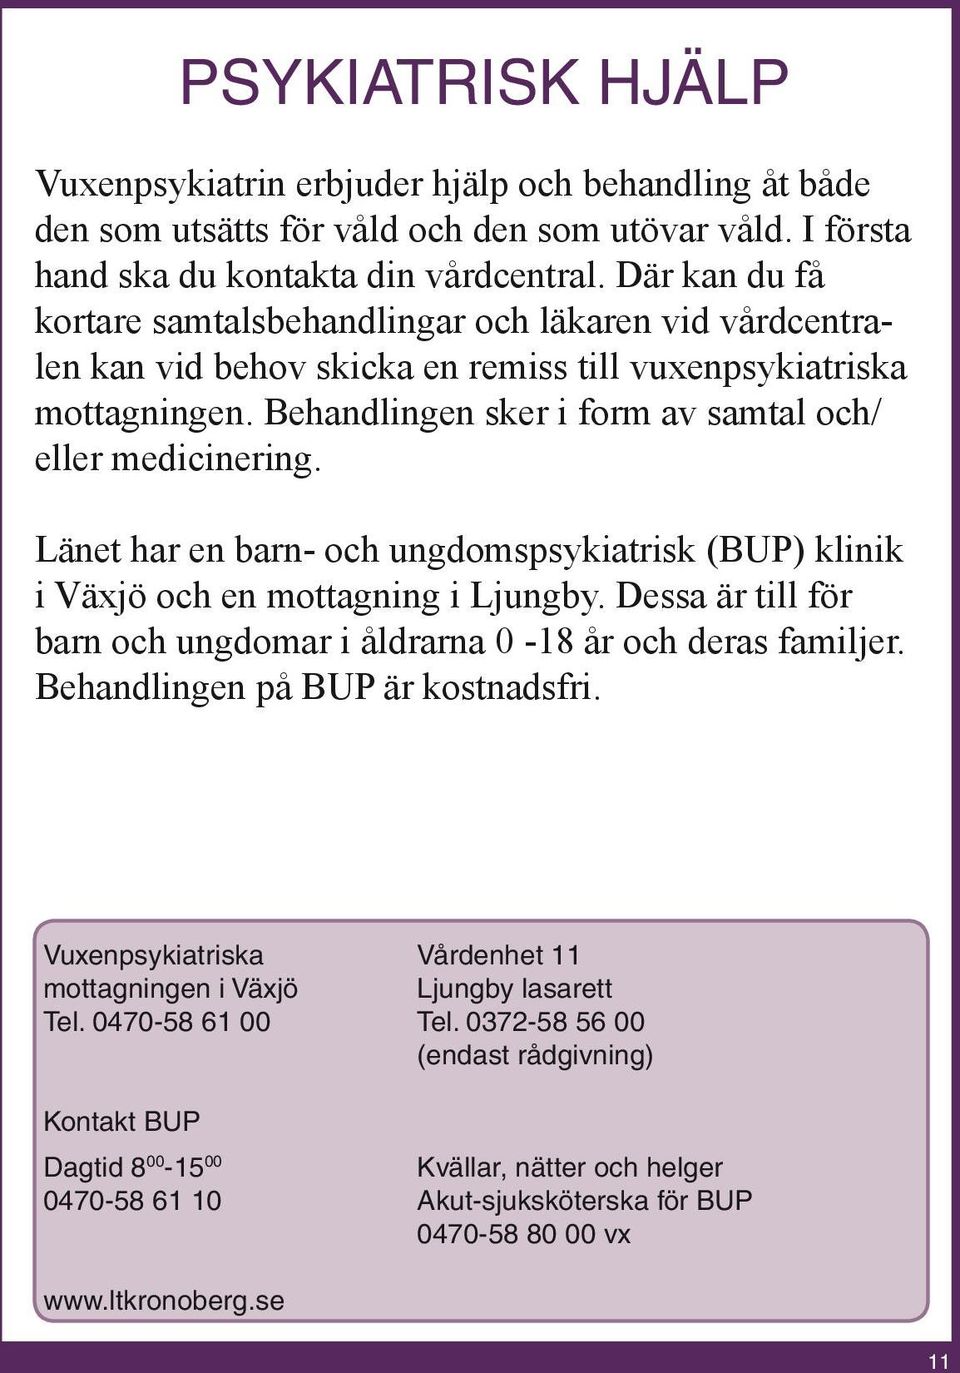 Länet har en barn- och ungdomspsykiatrisk (BUP) klinik i Växjö och en mottagning i Ljungby. Dessa är till för barn och ungdomar i åldrarna 0-18 år och deras familjer.